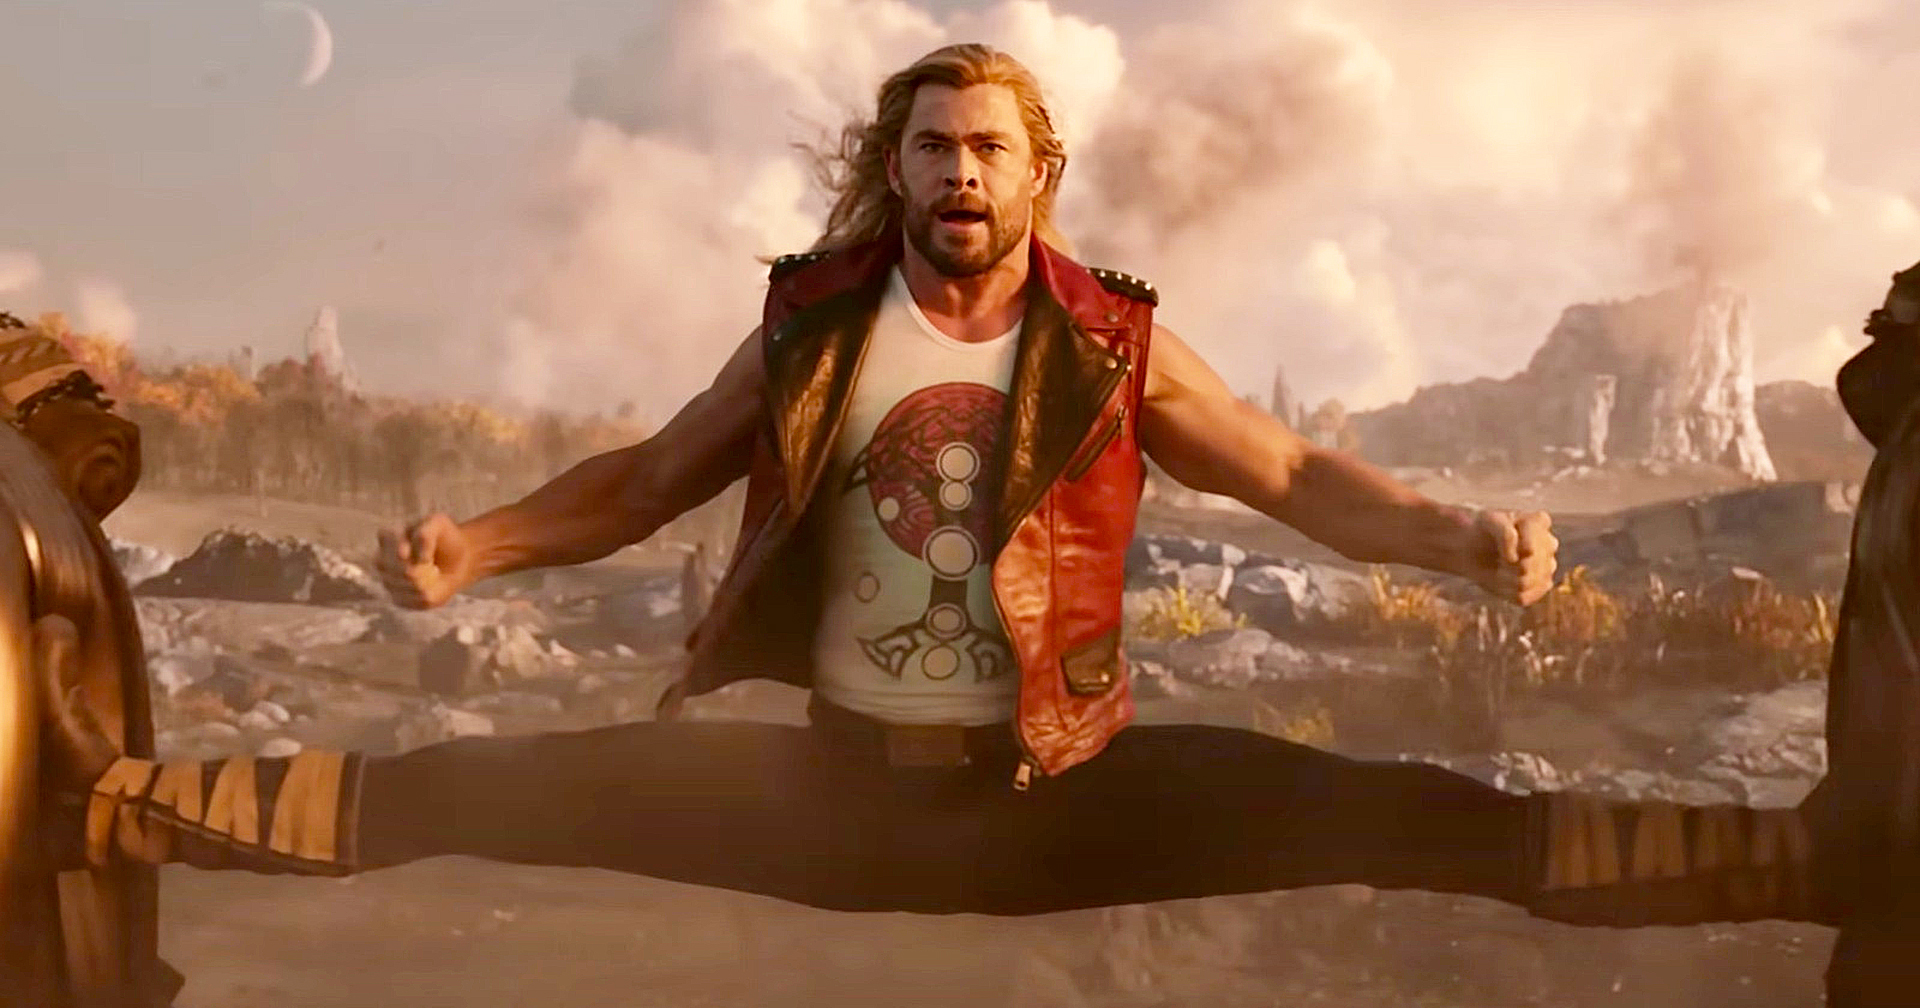 Chris Hemsworth ยอมรับทำ ‘Thor: Love and Thunder’ ออกมาดูงี่เง่าเกินไป หลังจากผู้ชมวิจารณ์ในแง่ลบ